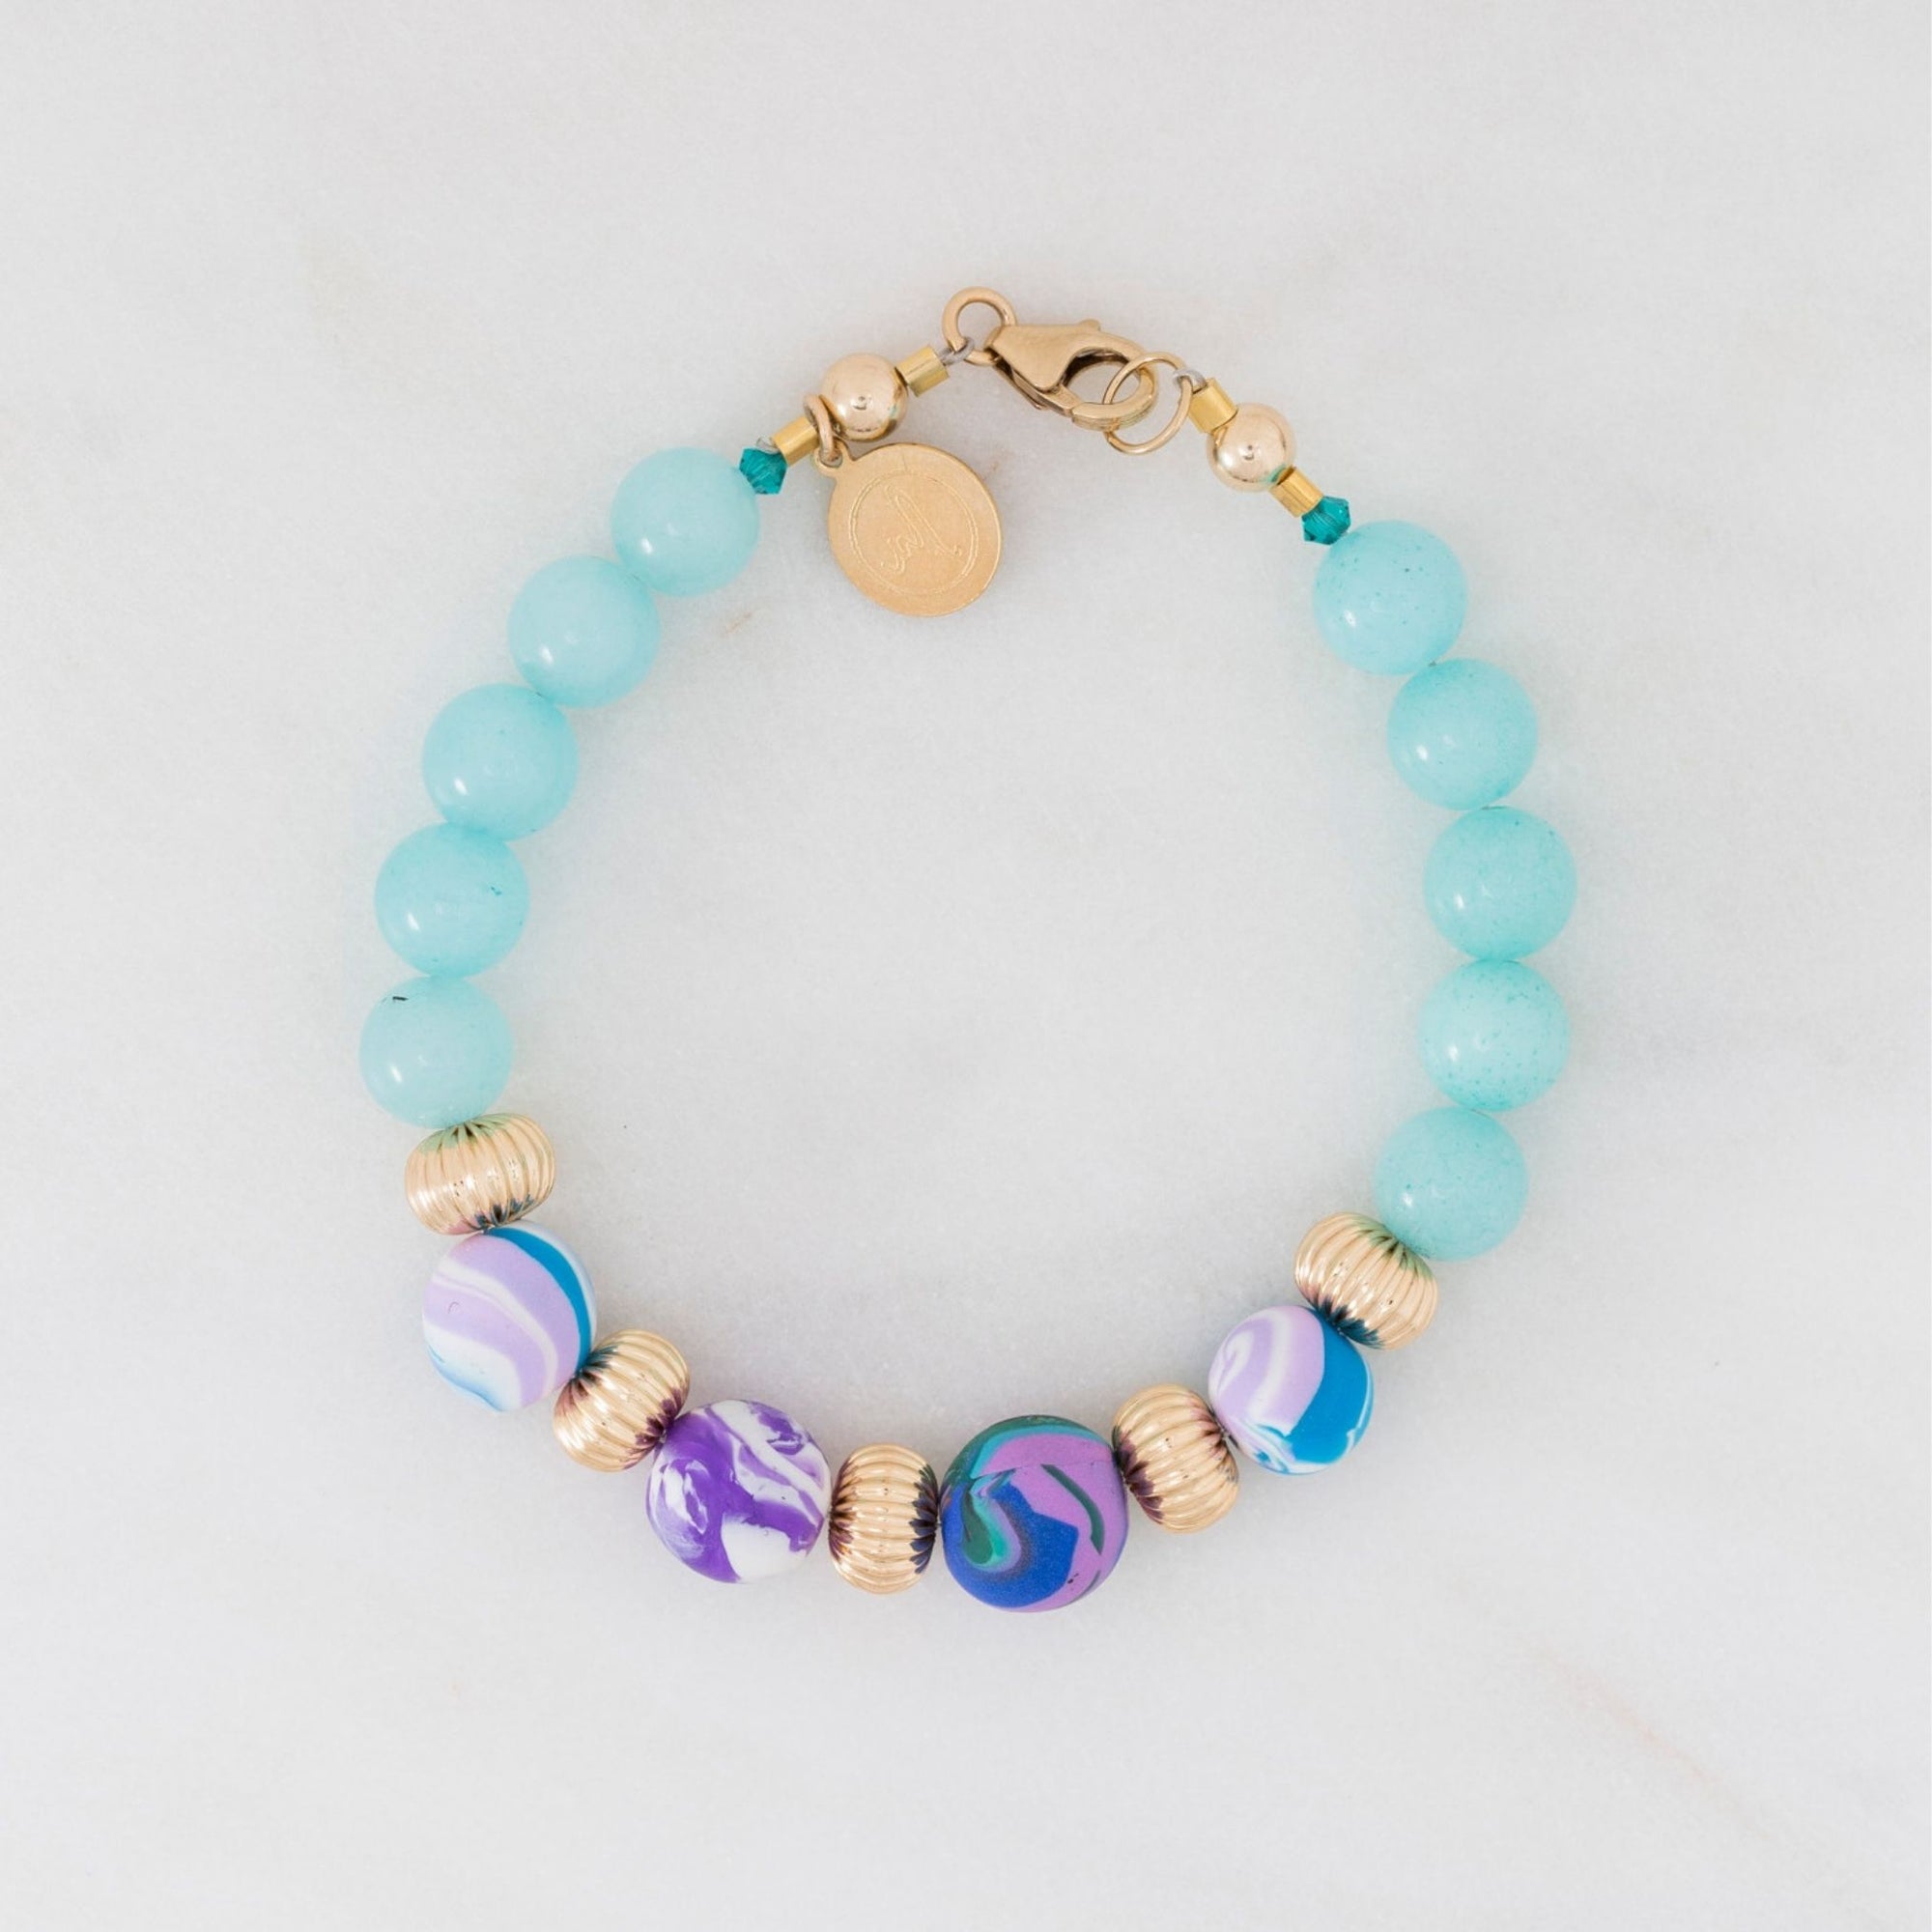 Marina-ra Handmade Beads and Amazonite Natural Gemstones AZ100